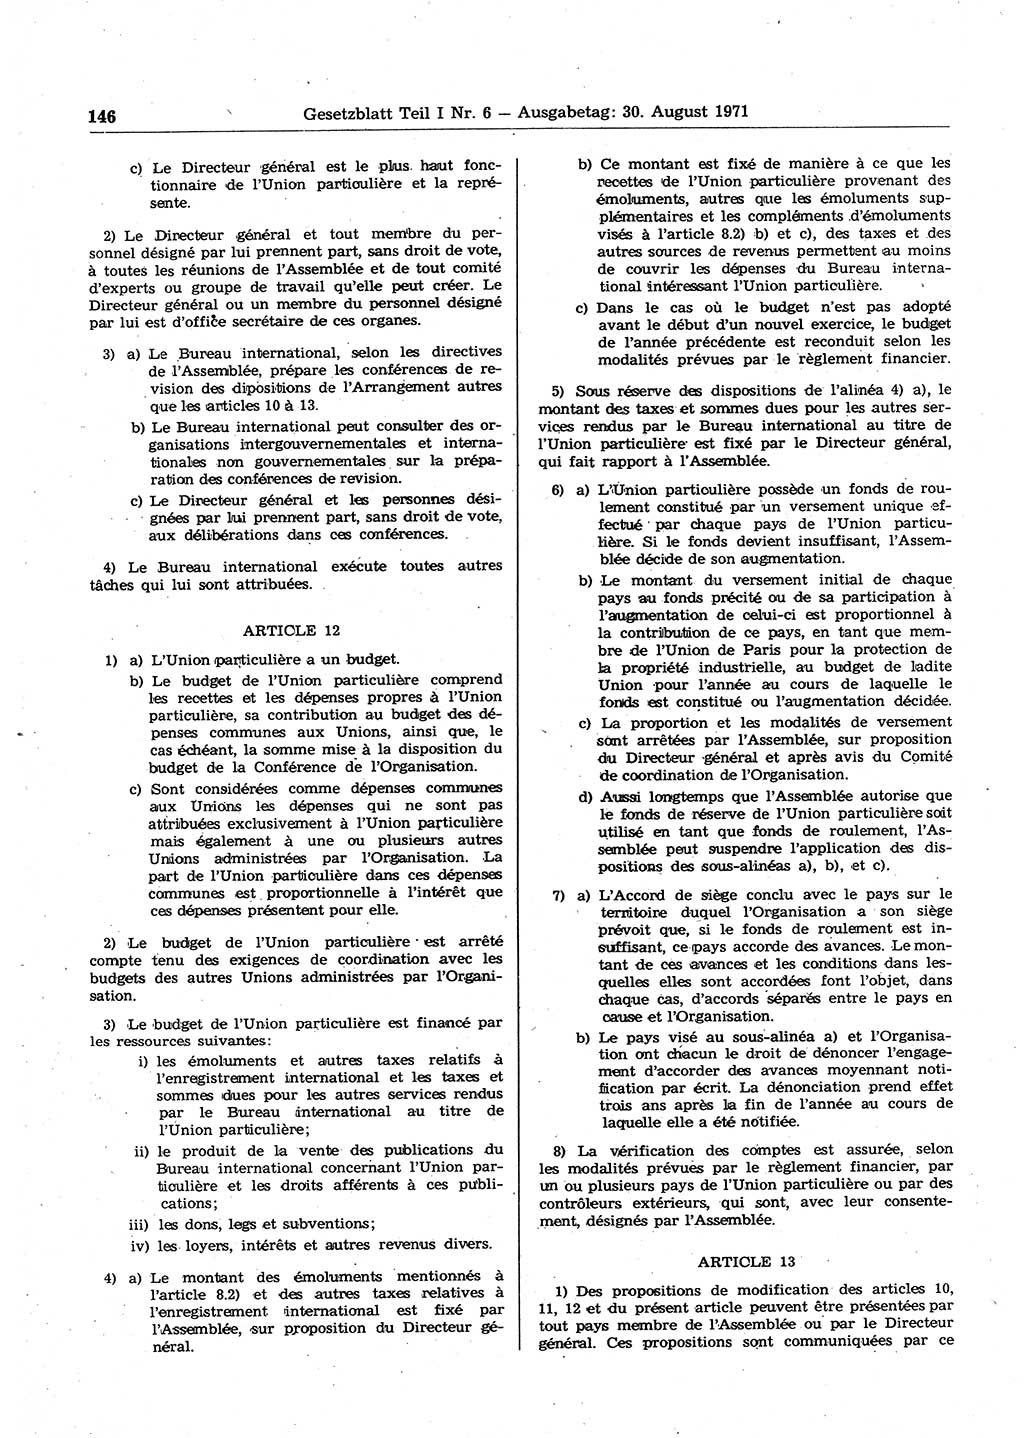 Gesetzblatt (GBl.) der Deutschen Demokratischen Republik (DDR) Teil Ⅰ 1971, Seite 146 (GBl. DDR Ⅰ 1971, S. 146)